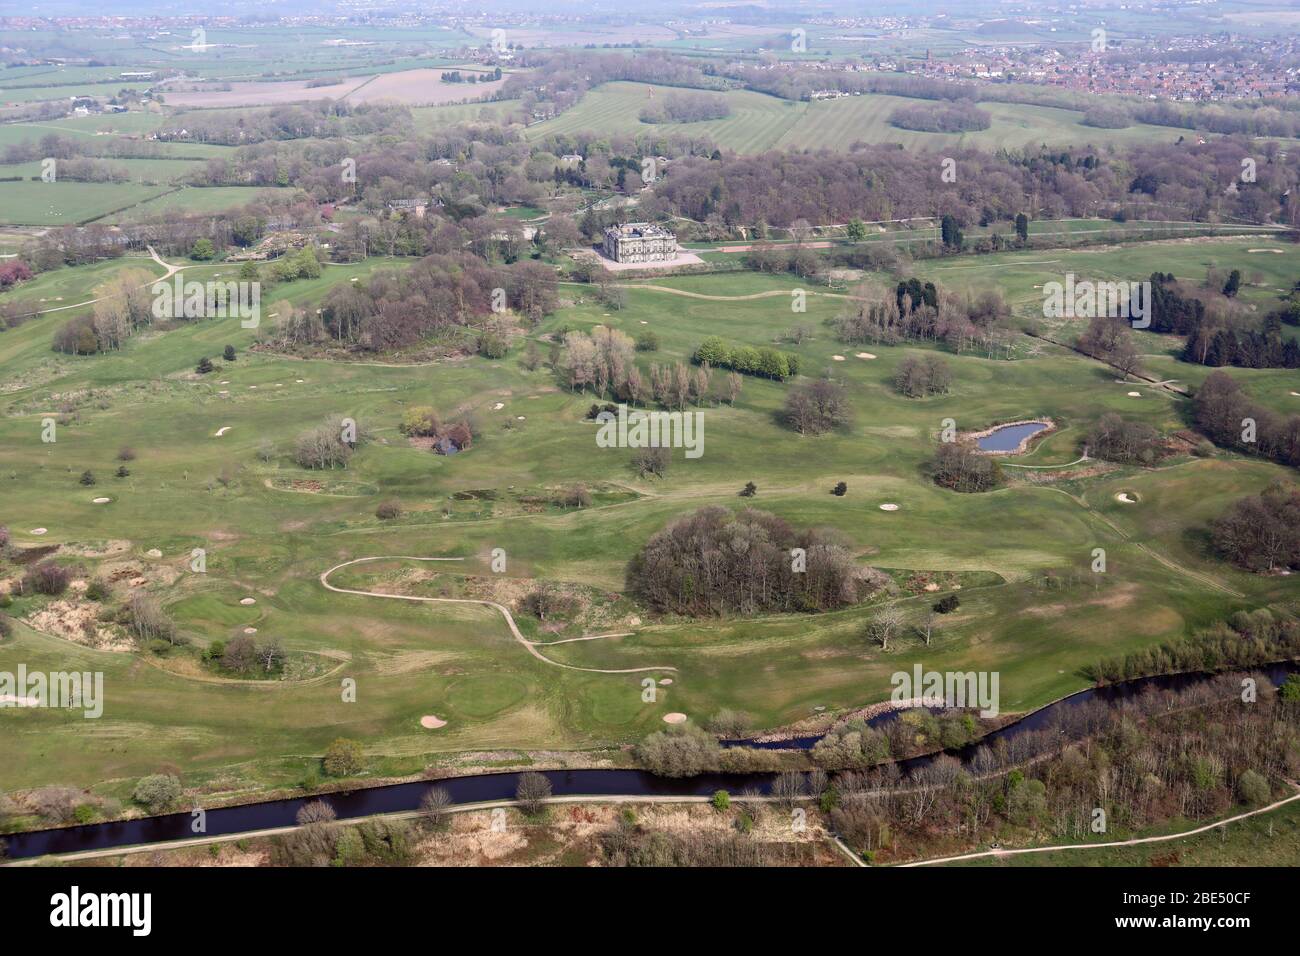 Vue aérienne sur le parc de Haigh Country Park, l'hôtel Haigh Hall et le parcours de golf, près de Wigan, Lancashire, Royaume-Uni Banque D'Images